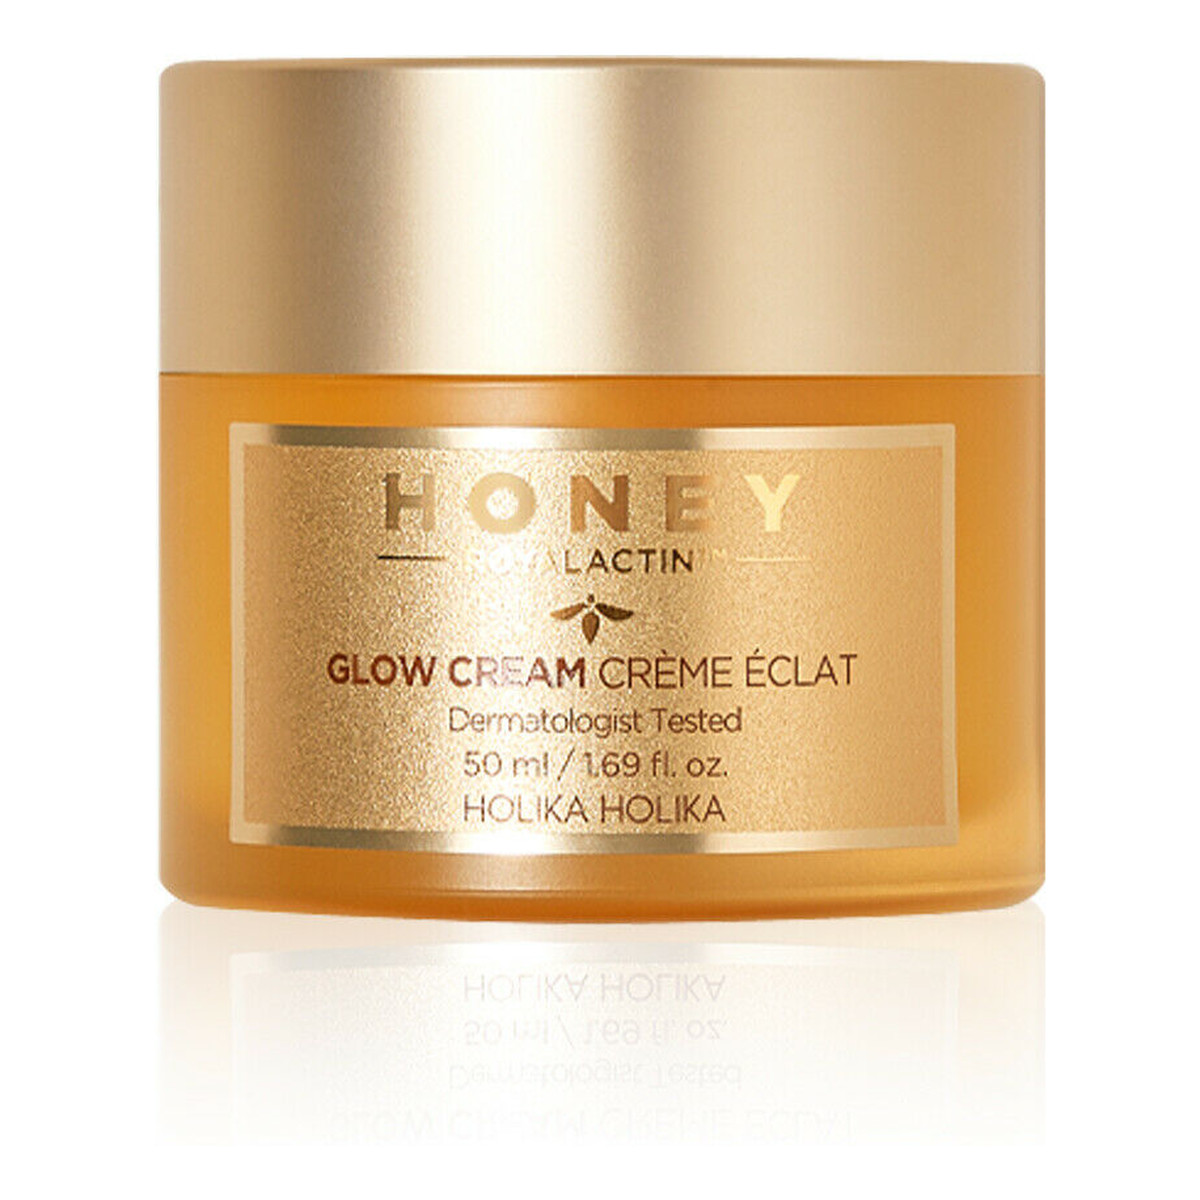 Holika Holika Honey Royalactin Glow Cream rozświetlający Krem do twarzy 50ml